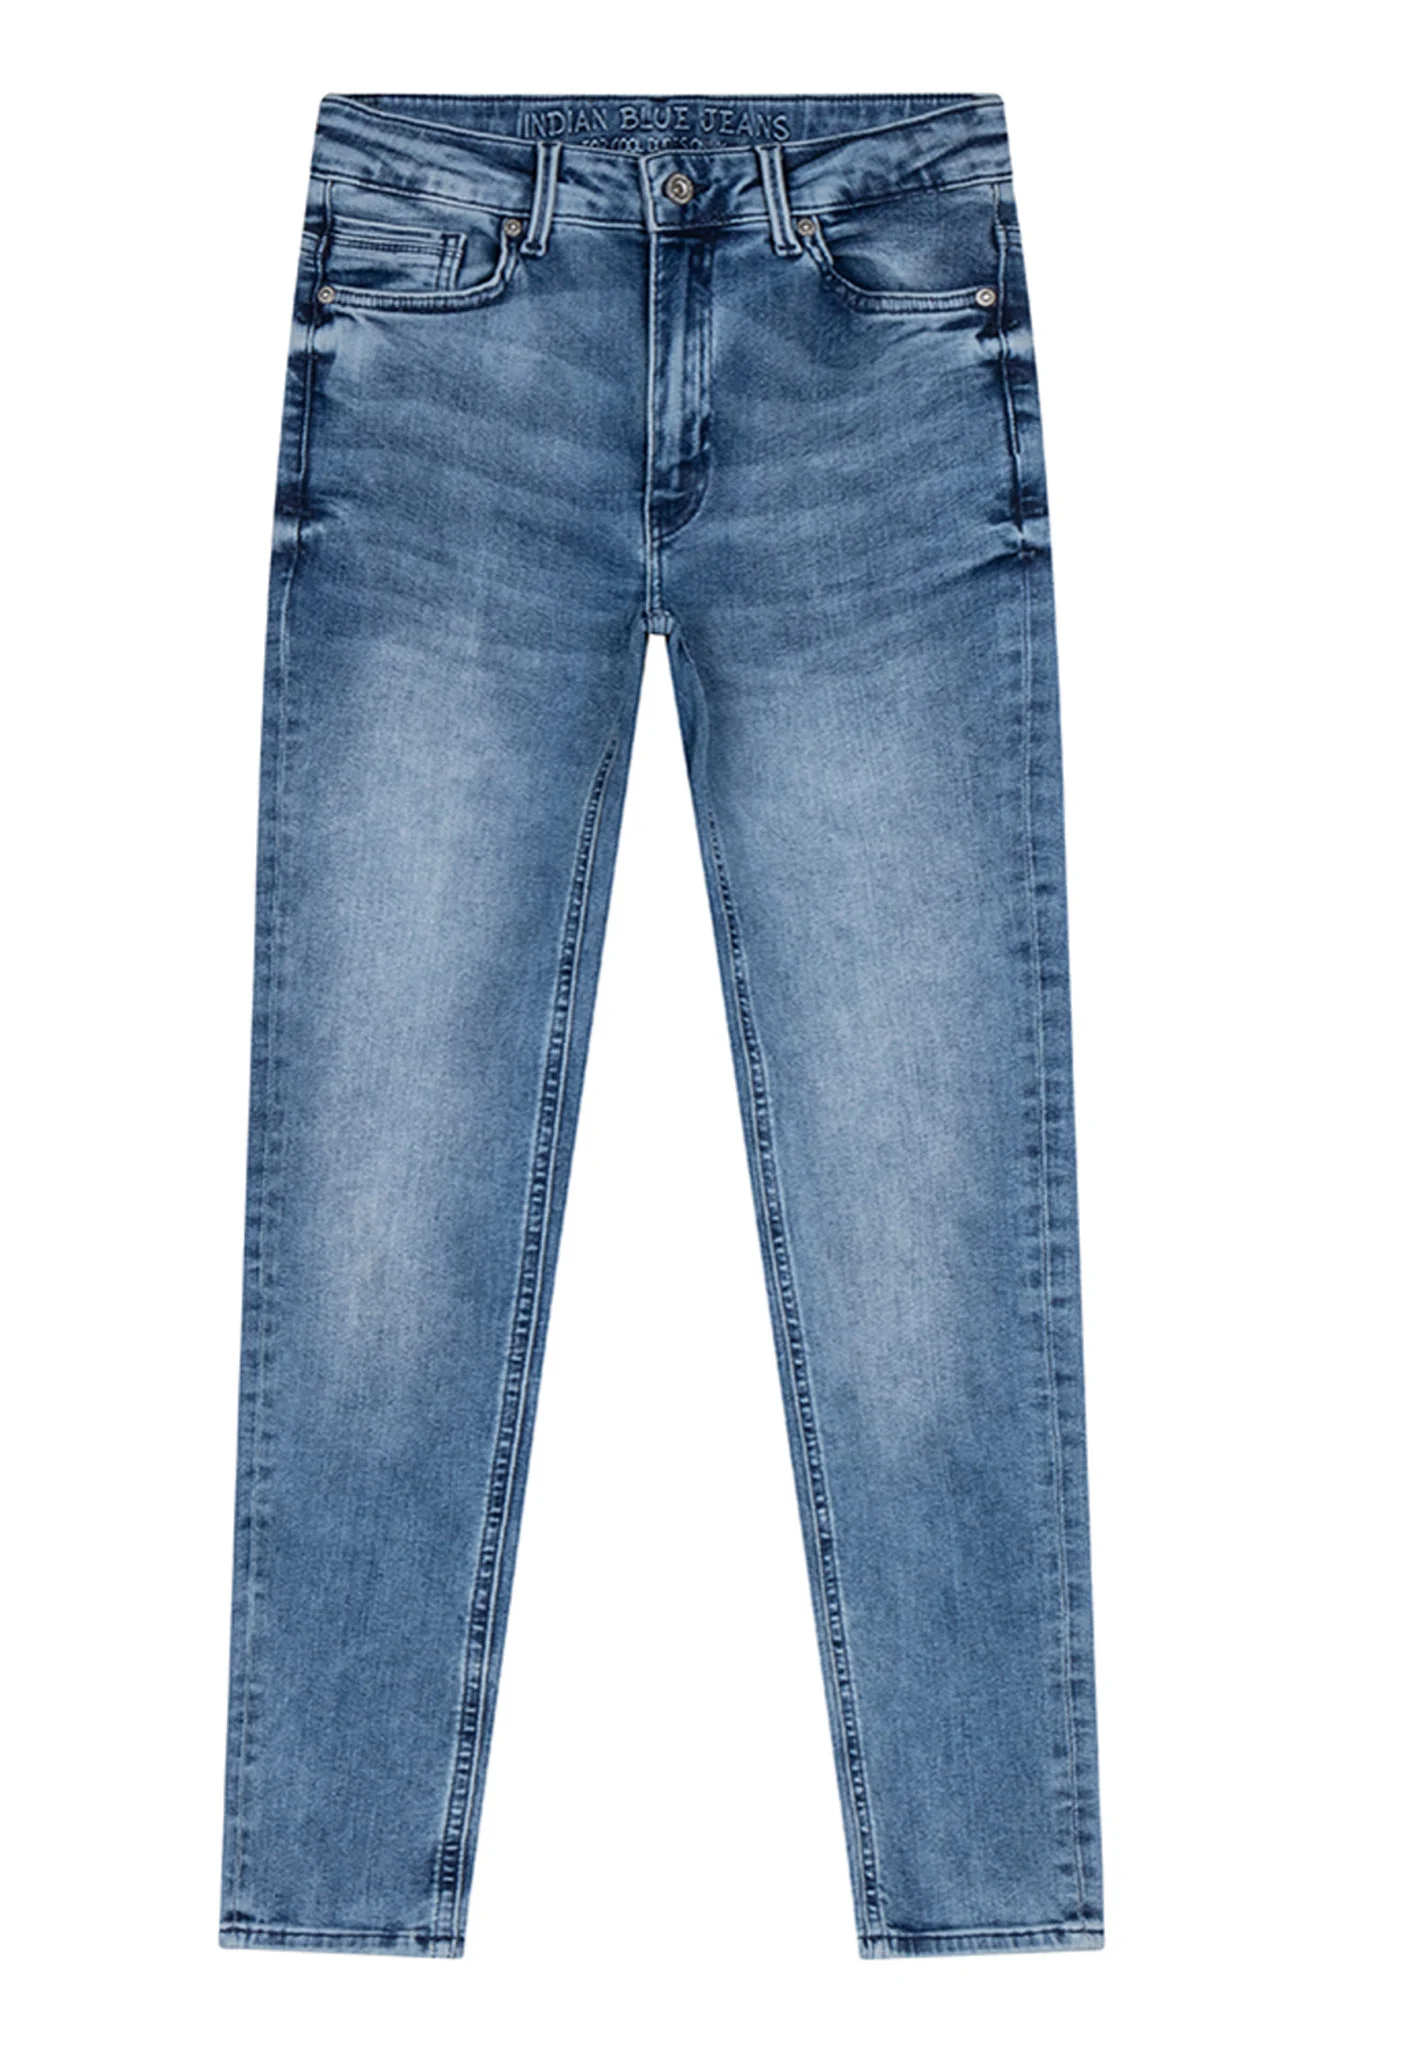 Afbeelding van Indian Blue Jongens jeans ryan skinny fit medium